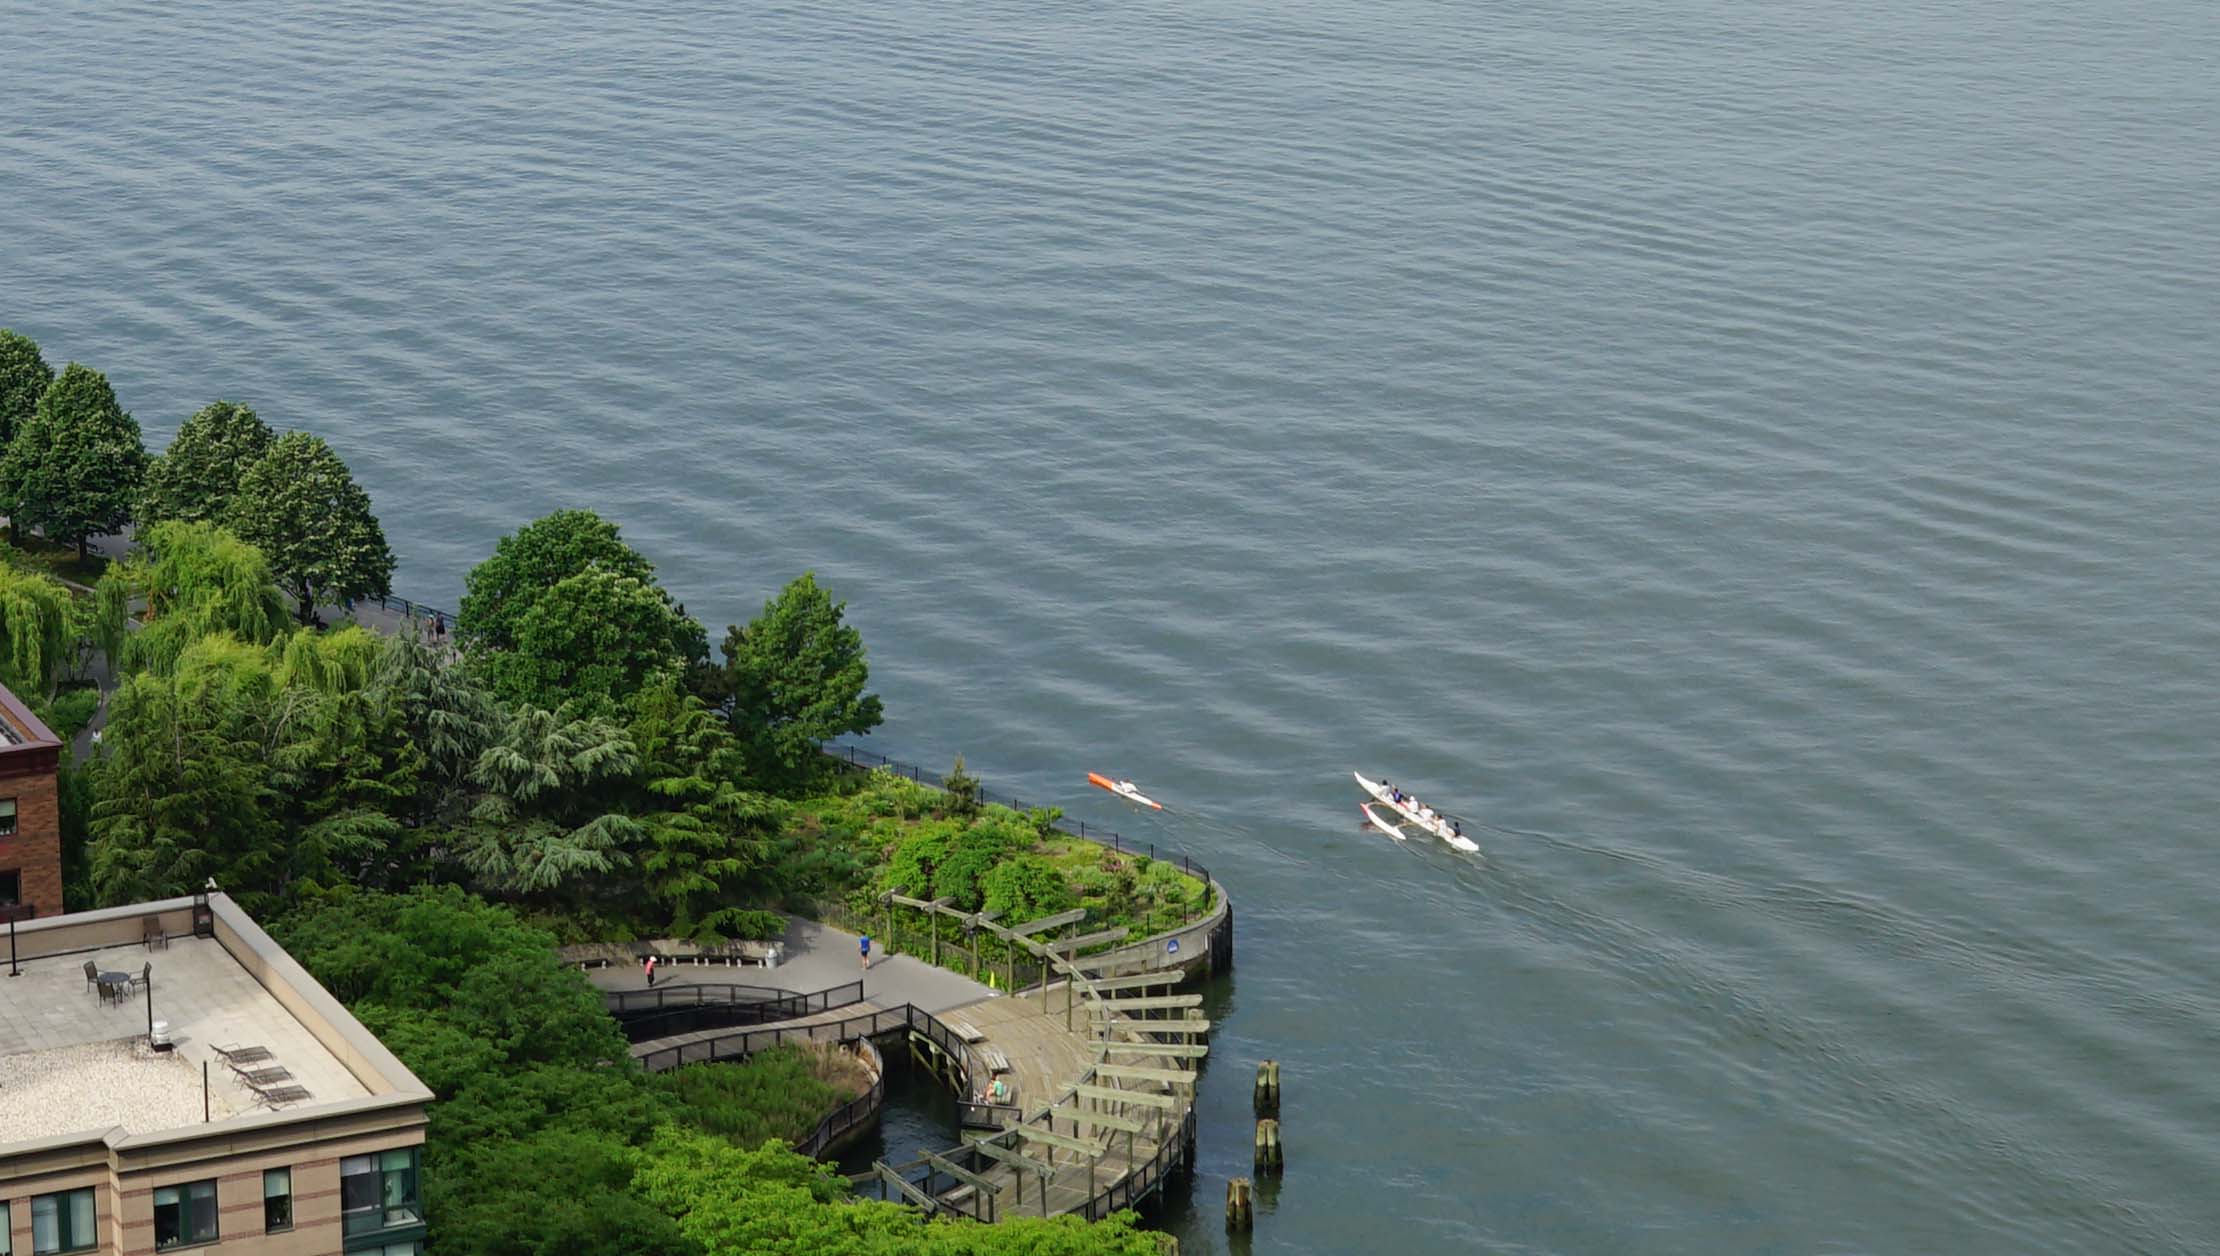 Outrigger canoe on New York Harbor 5-31-2015